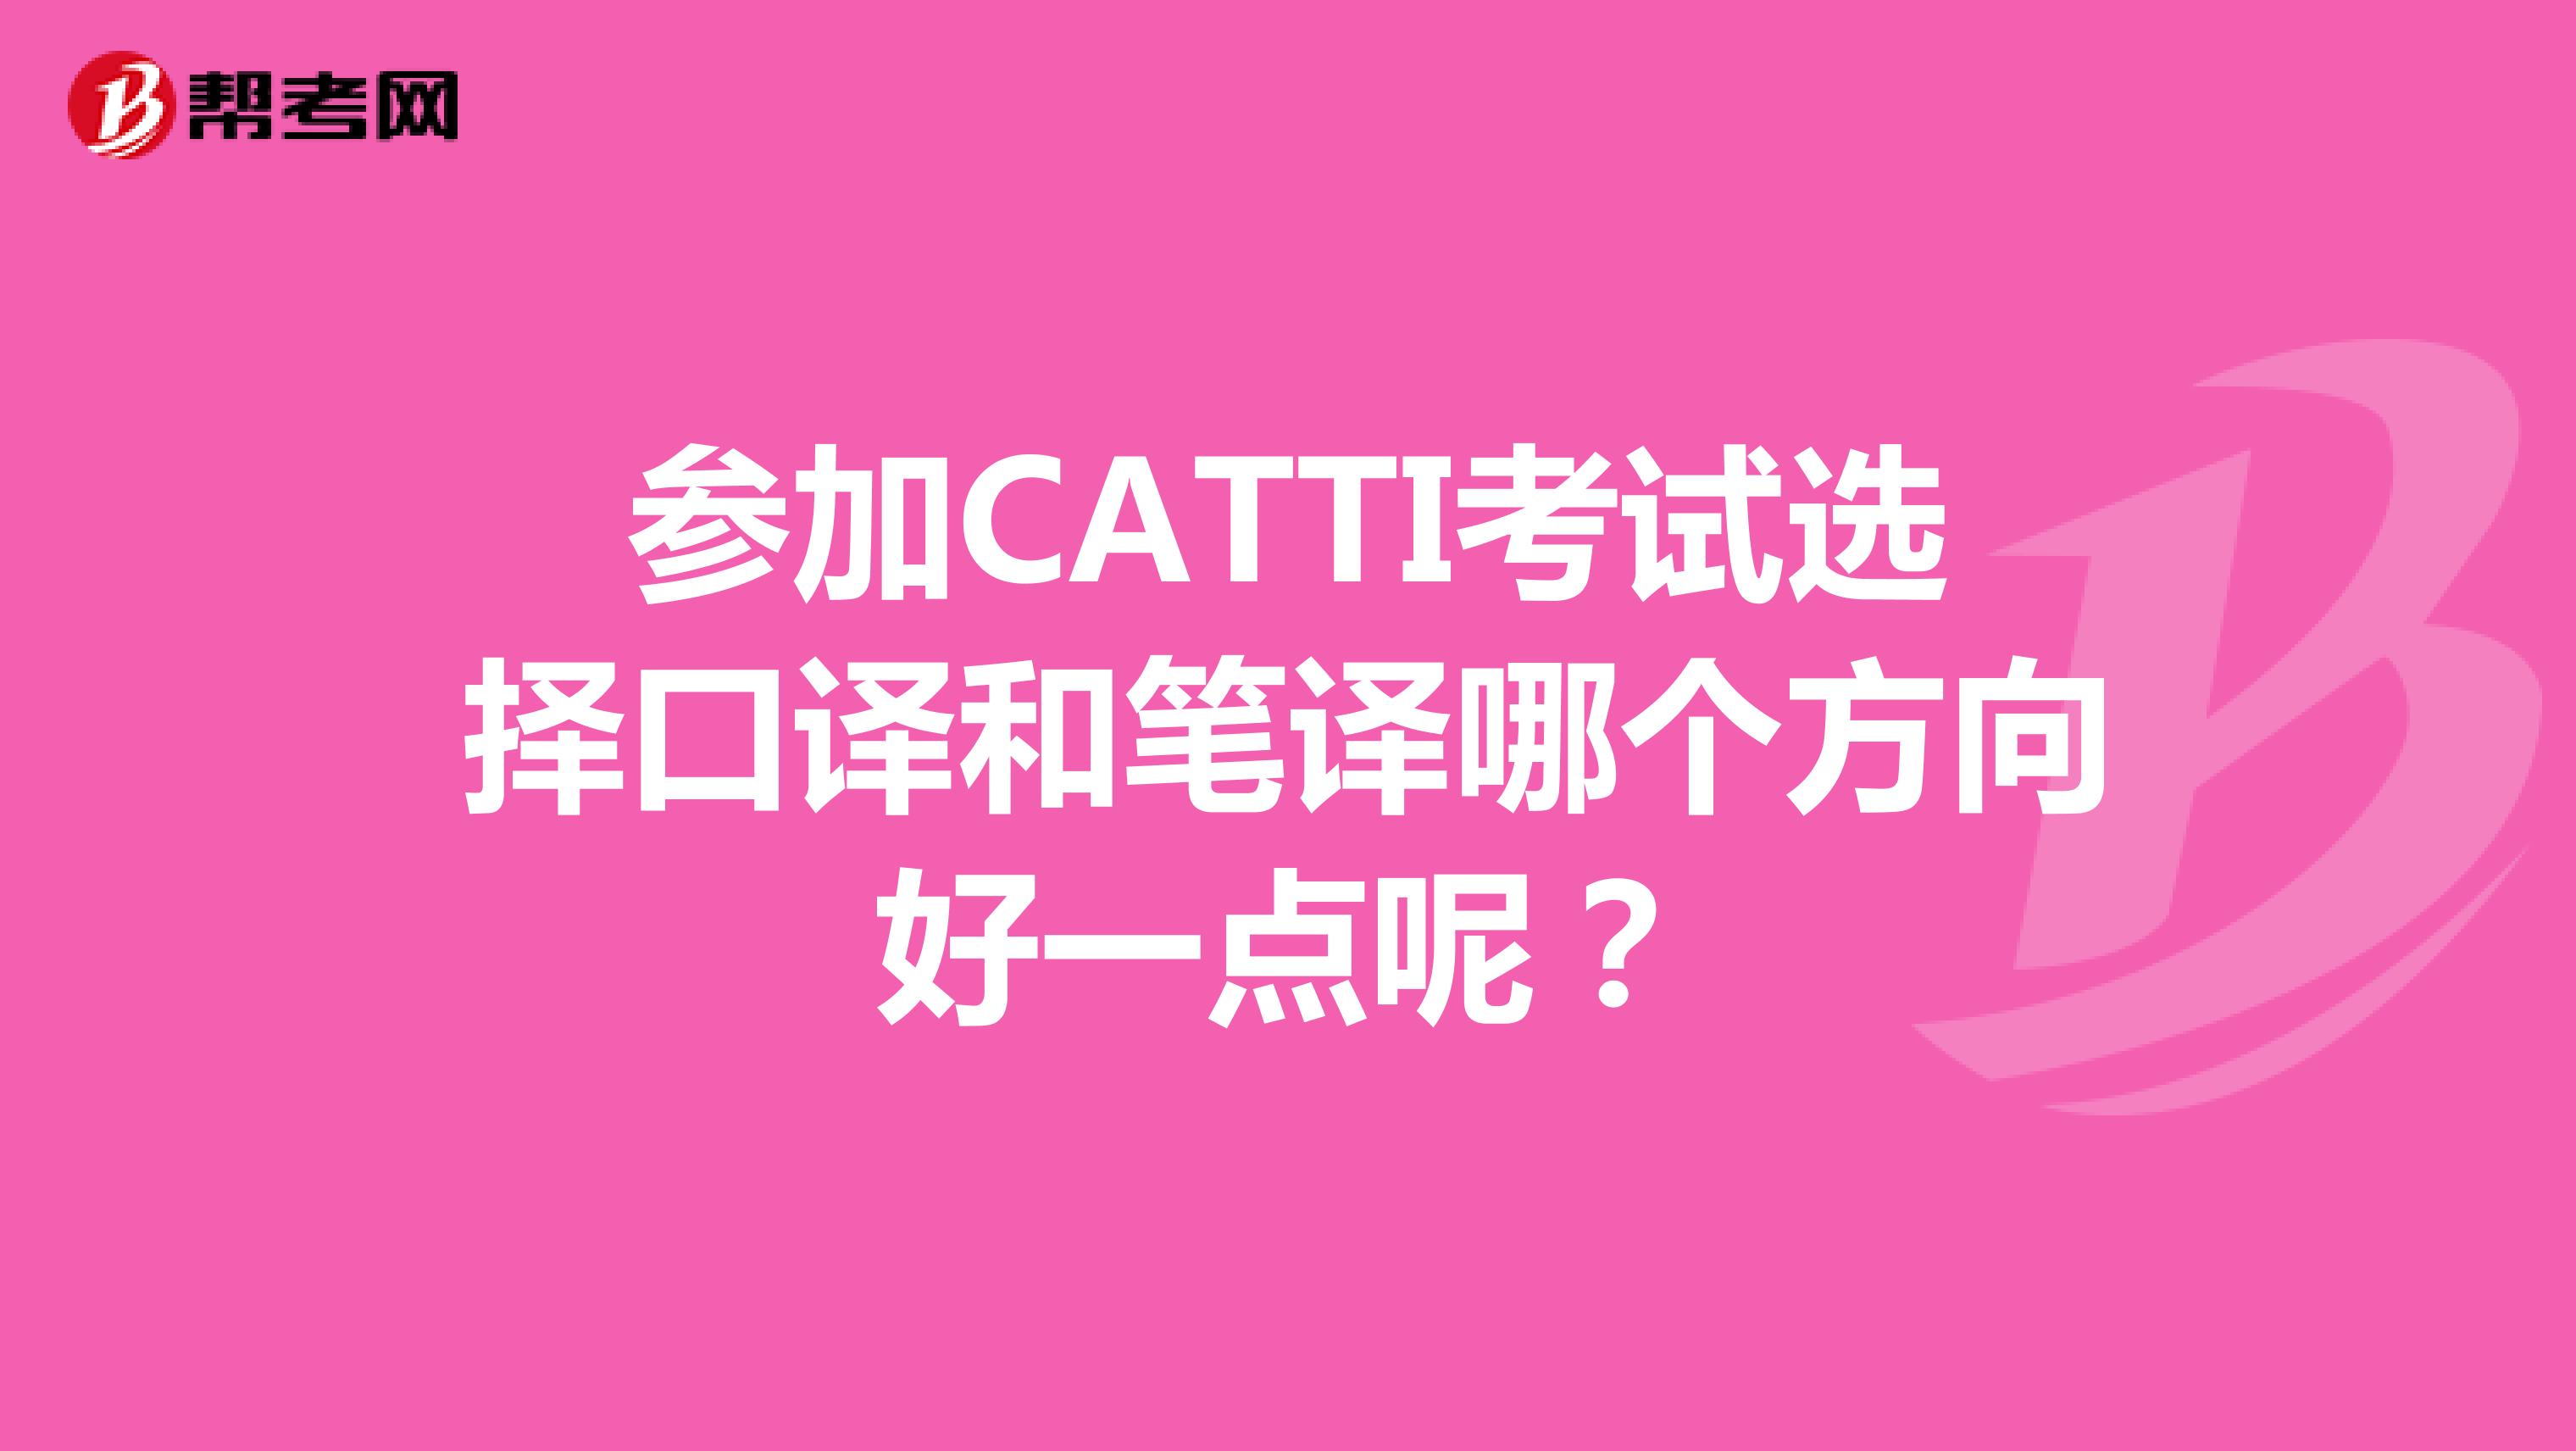 参加CATTI考试选择口译和笔译哪个方向好一点呢？